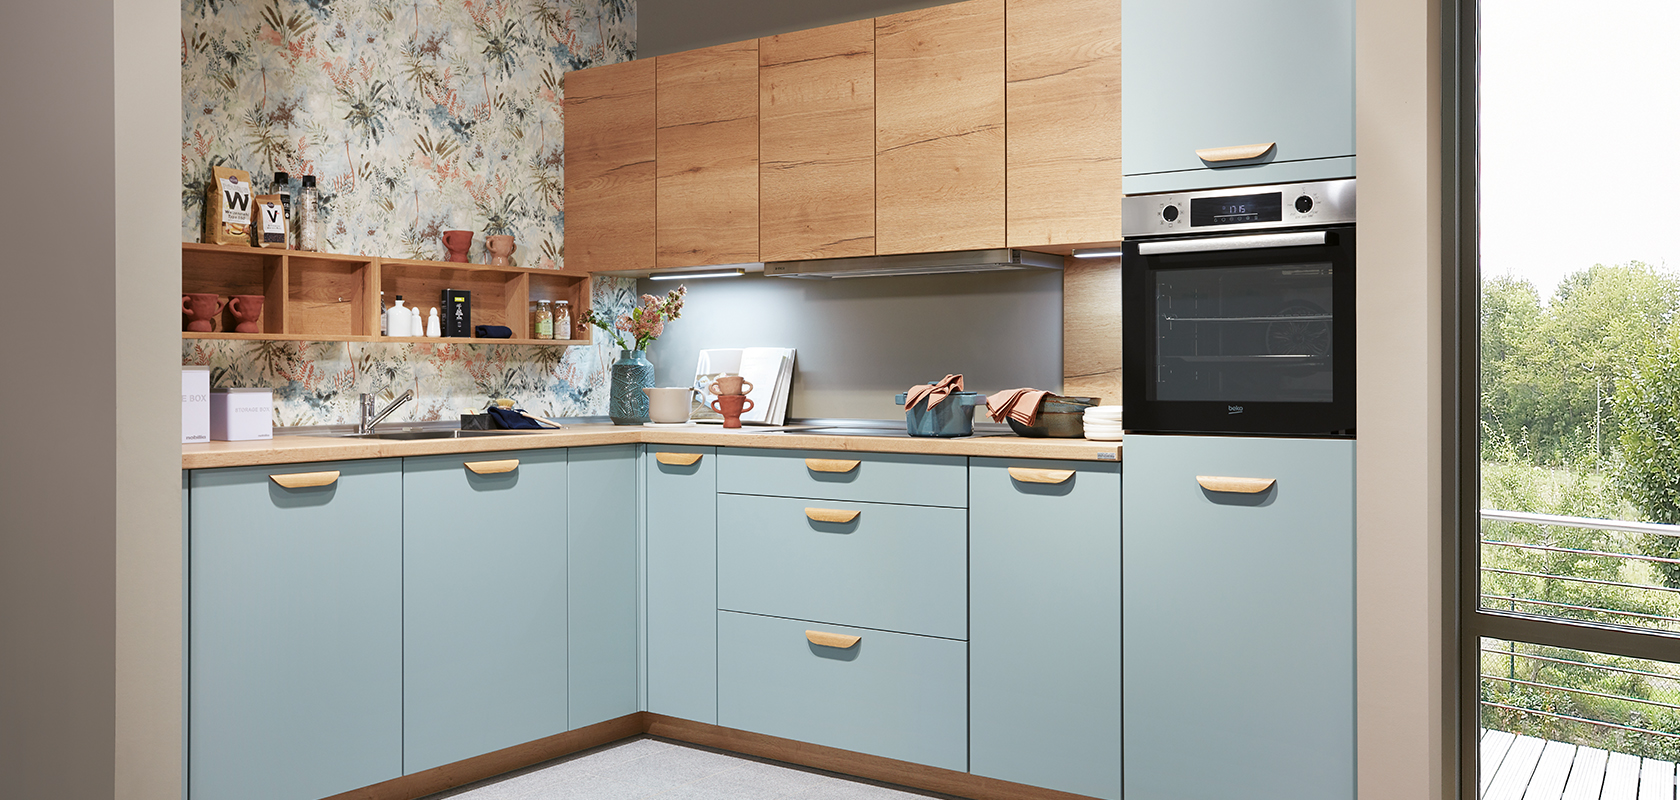 Interior de cocina moderna con gabinetes azules, encimeras de madera y electrodomésticos de acero inoxidable, acentuados con papel tapiz floral y luz natural de una ventana.